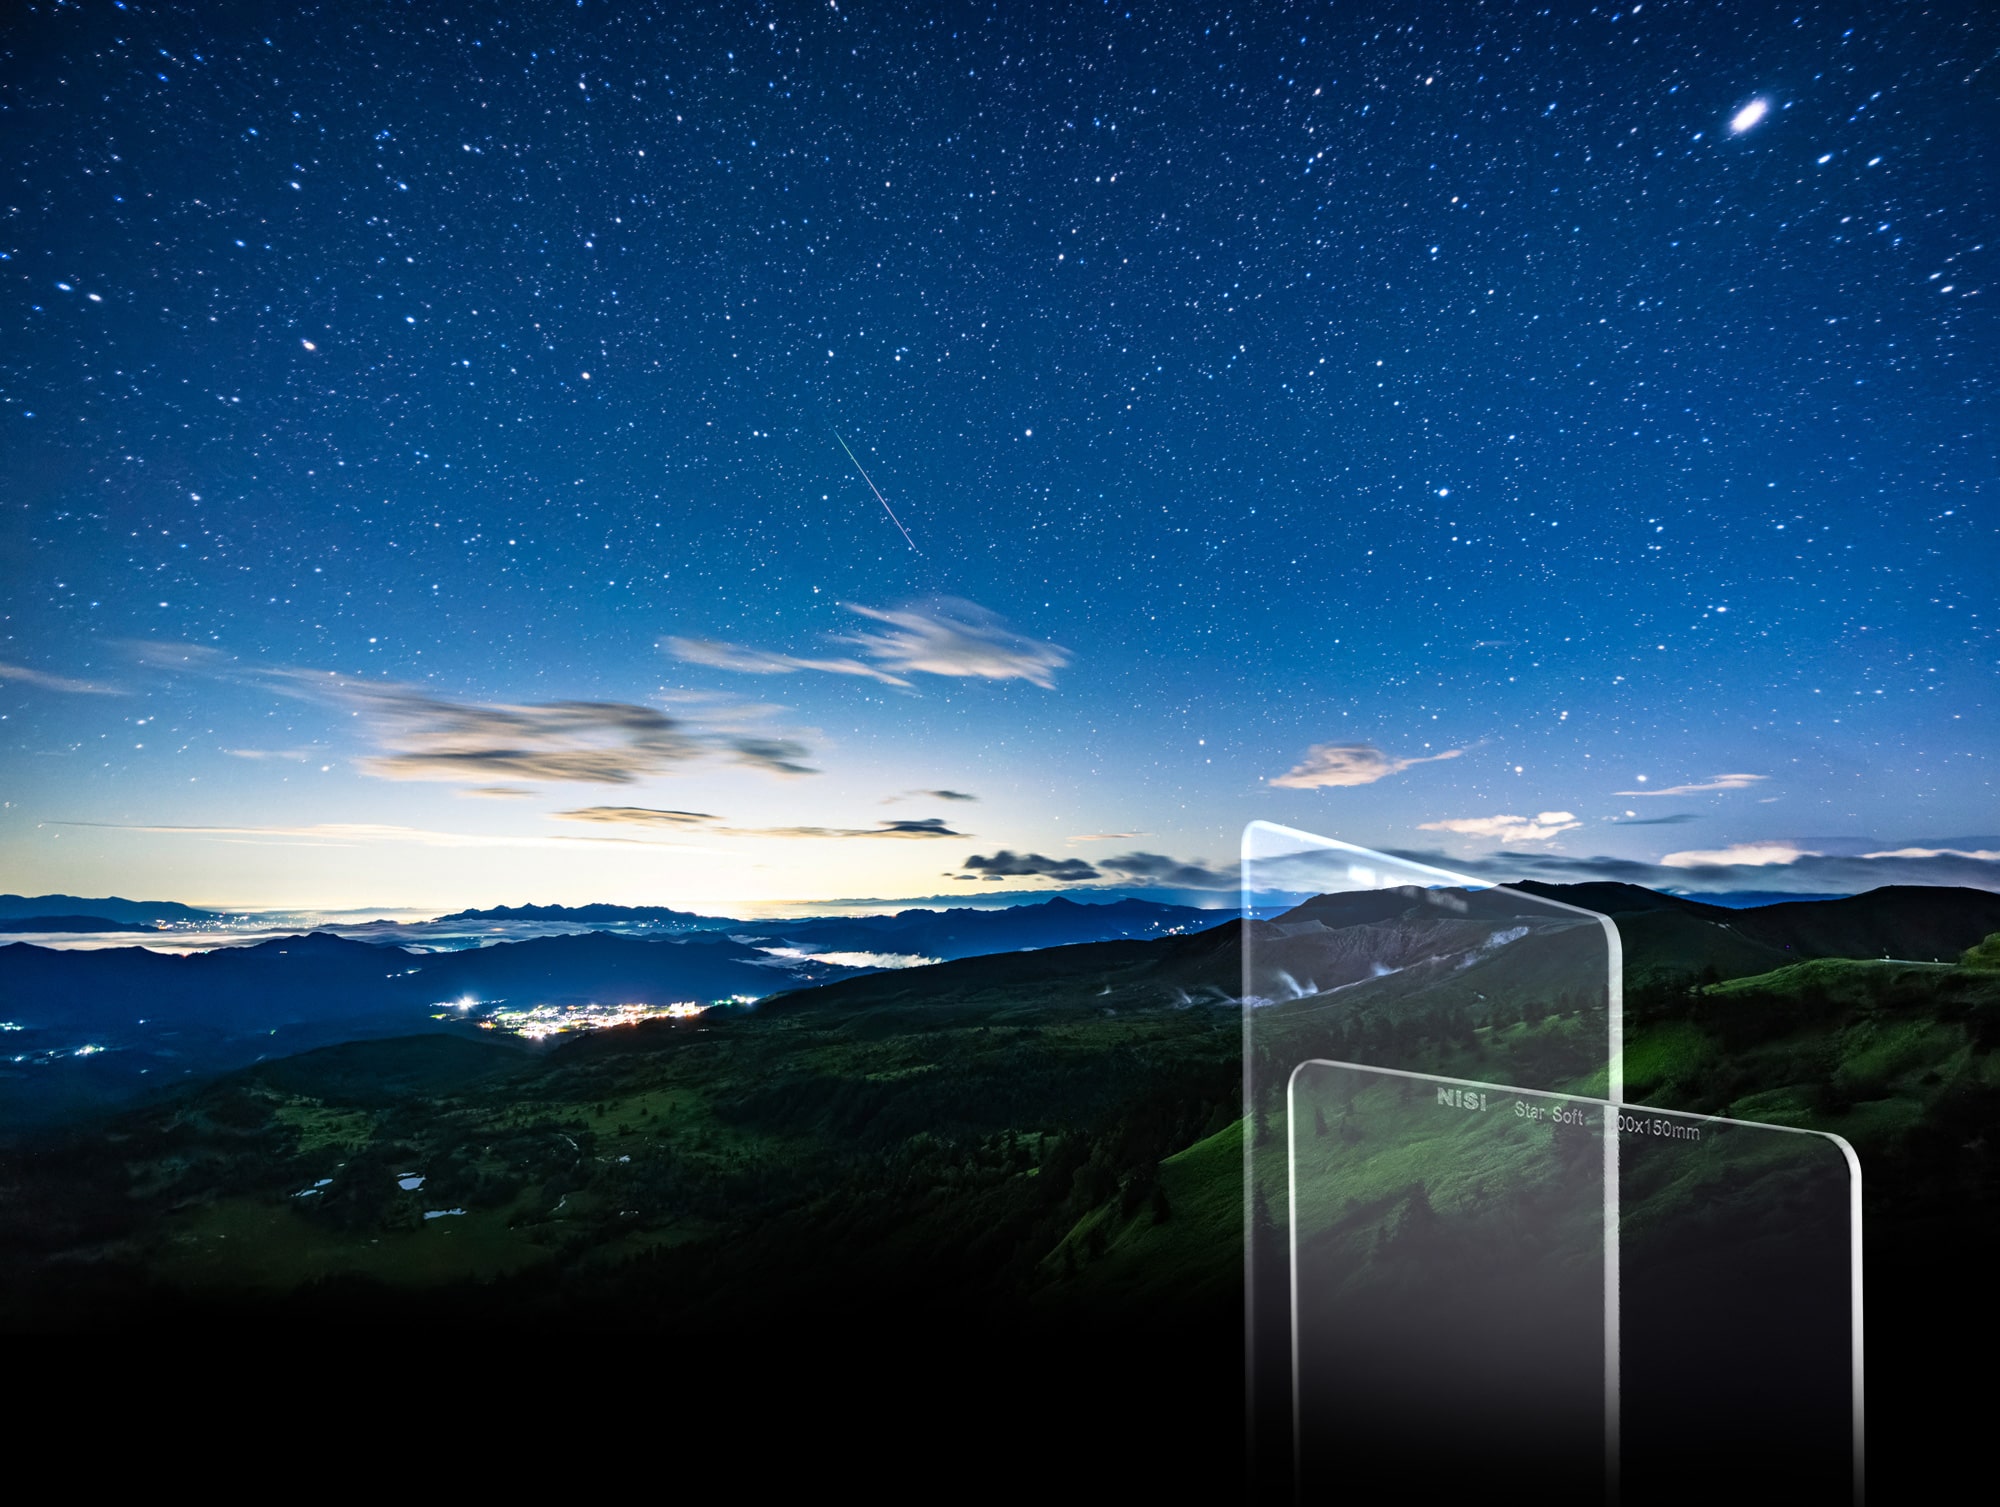 NiSi 角型フィルター 100mmシステム 星景撮影用 ソフトフォーカス